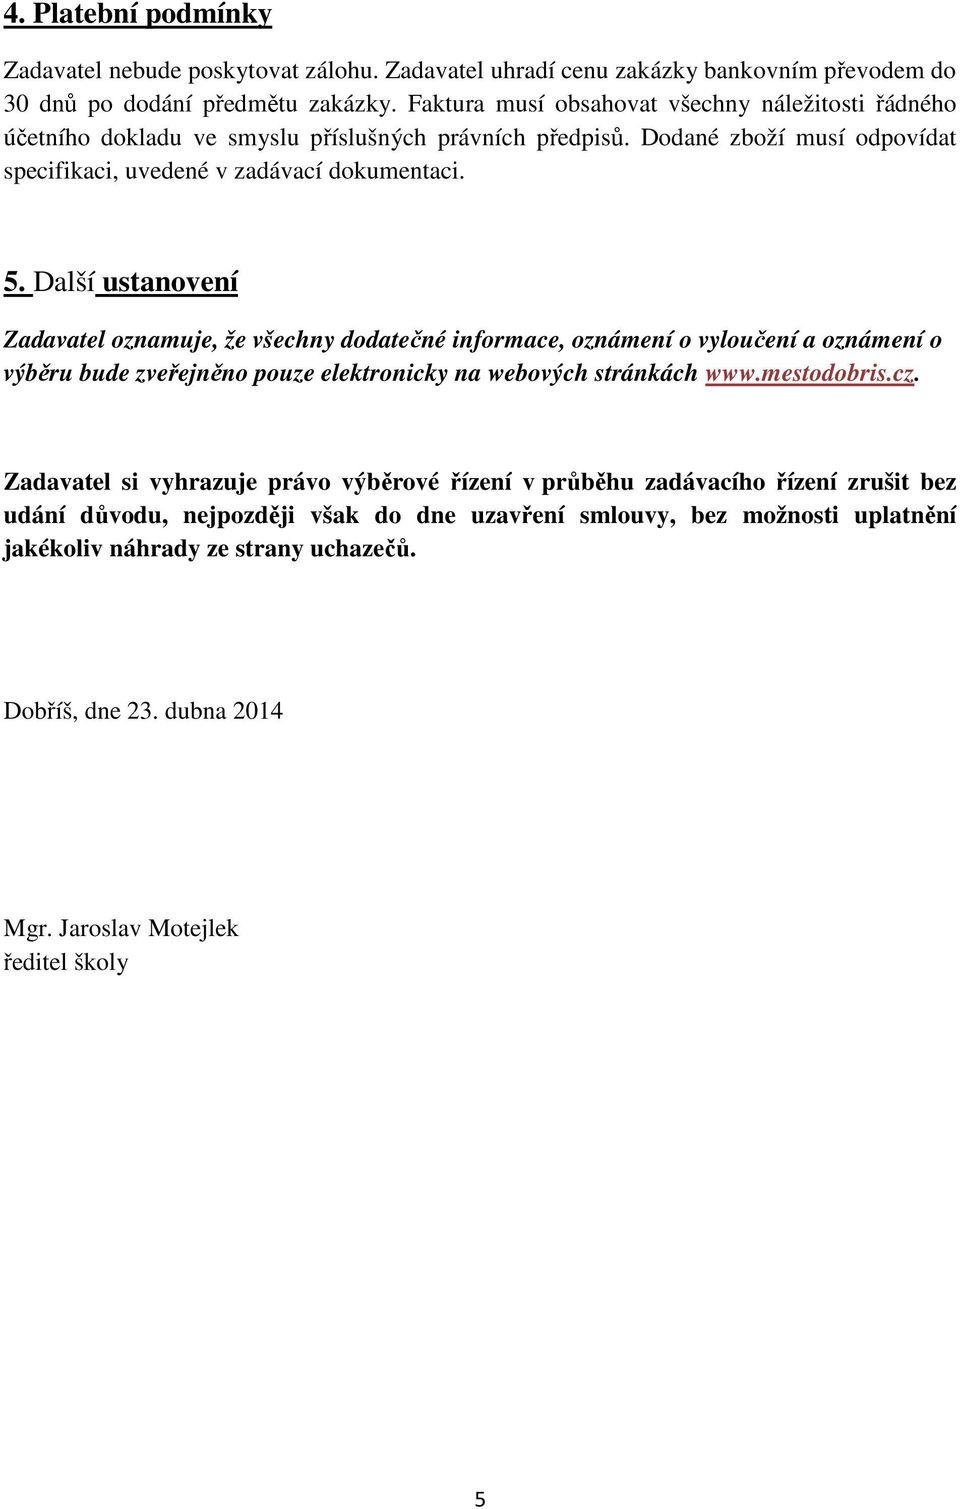 Další ustanovení Zadavatel oznamuje, že všechny dodatečné informace, oznámení o vyloučení a oznámení o výběru bude zveřejněno pouze elektronicky na webových stránkách www.mestodobris.cz.